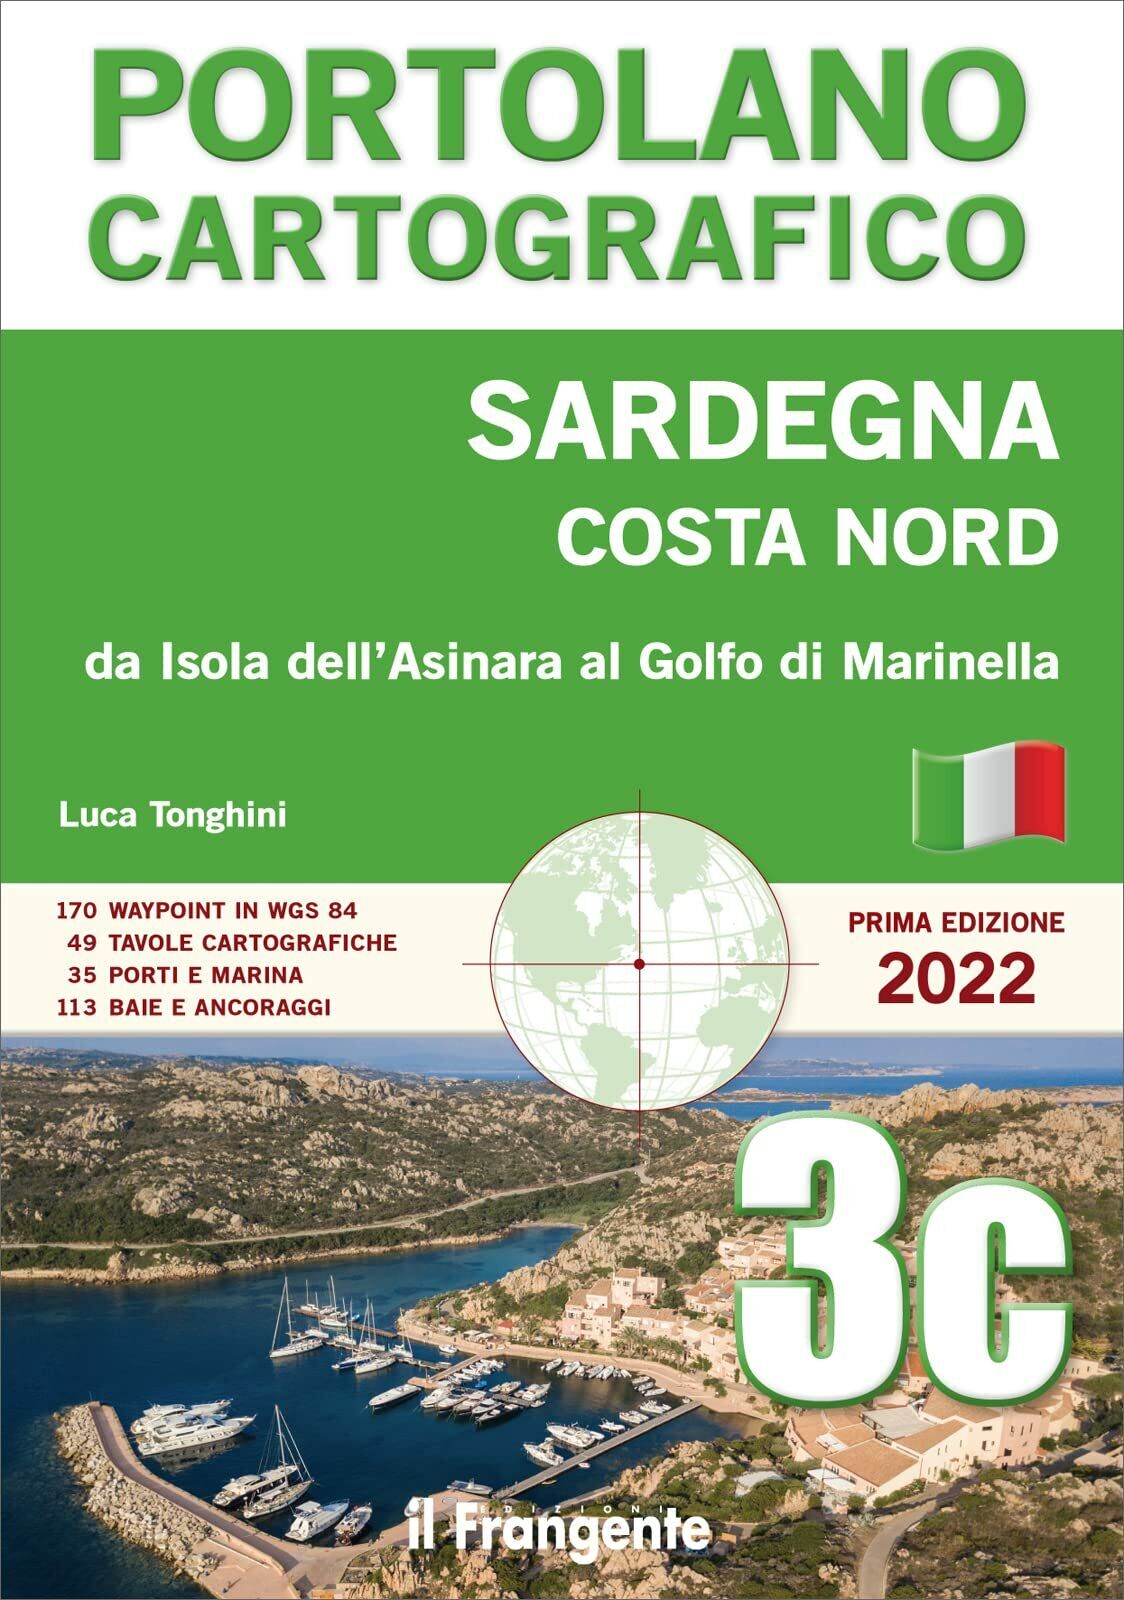 Sardegna Costa Nord - Luca Tonghini - Il frangente, 2022